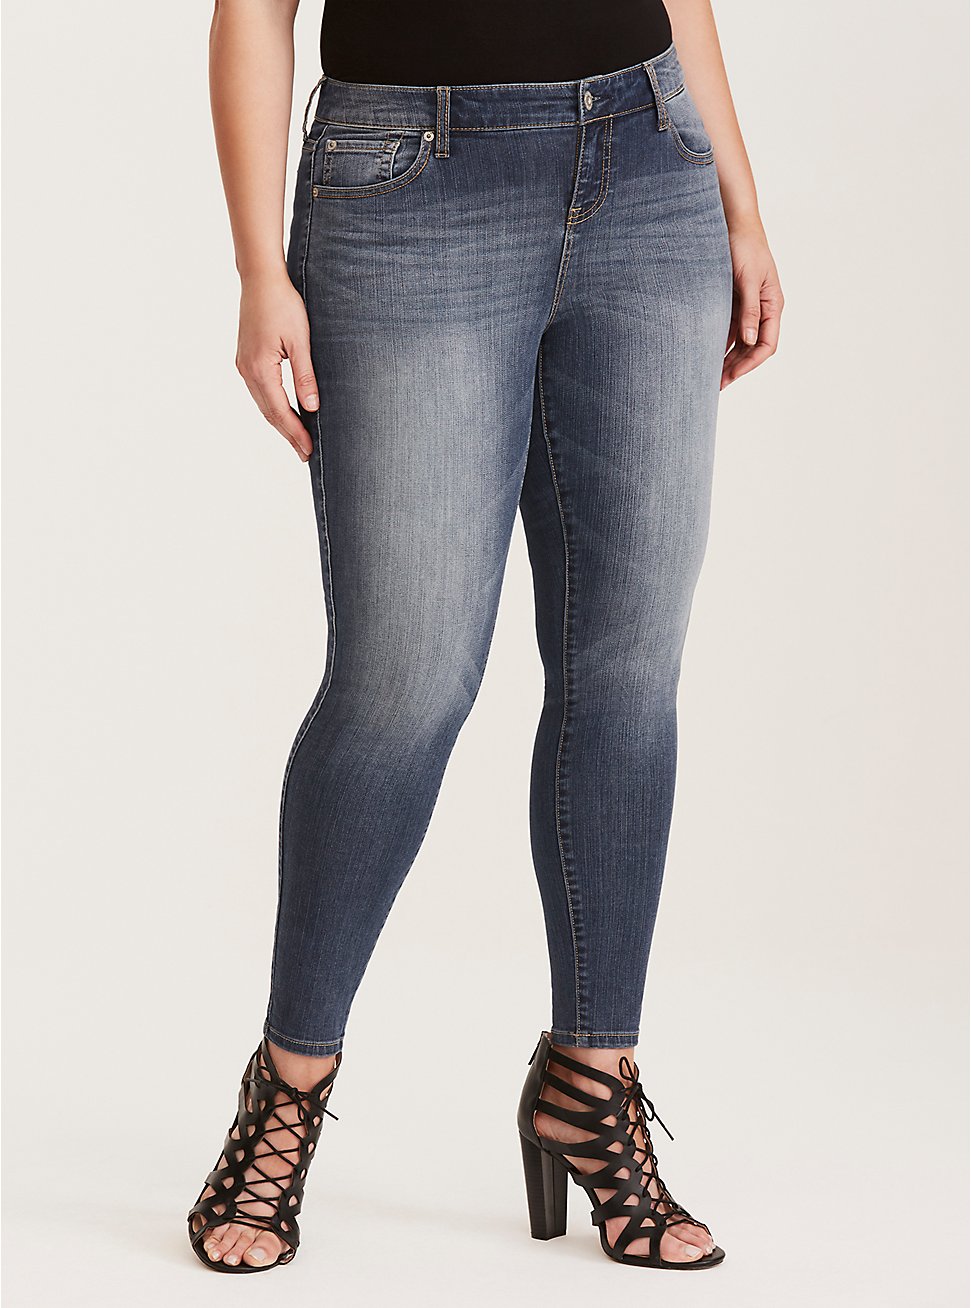 Plus Size Premium Stretch Skinny Jean – Medium Wash, NEPTUNE, hi-res